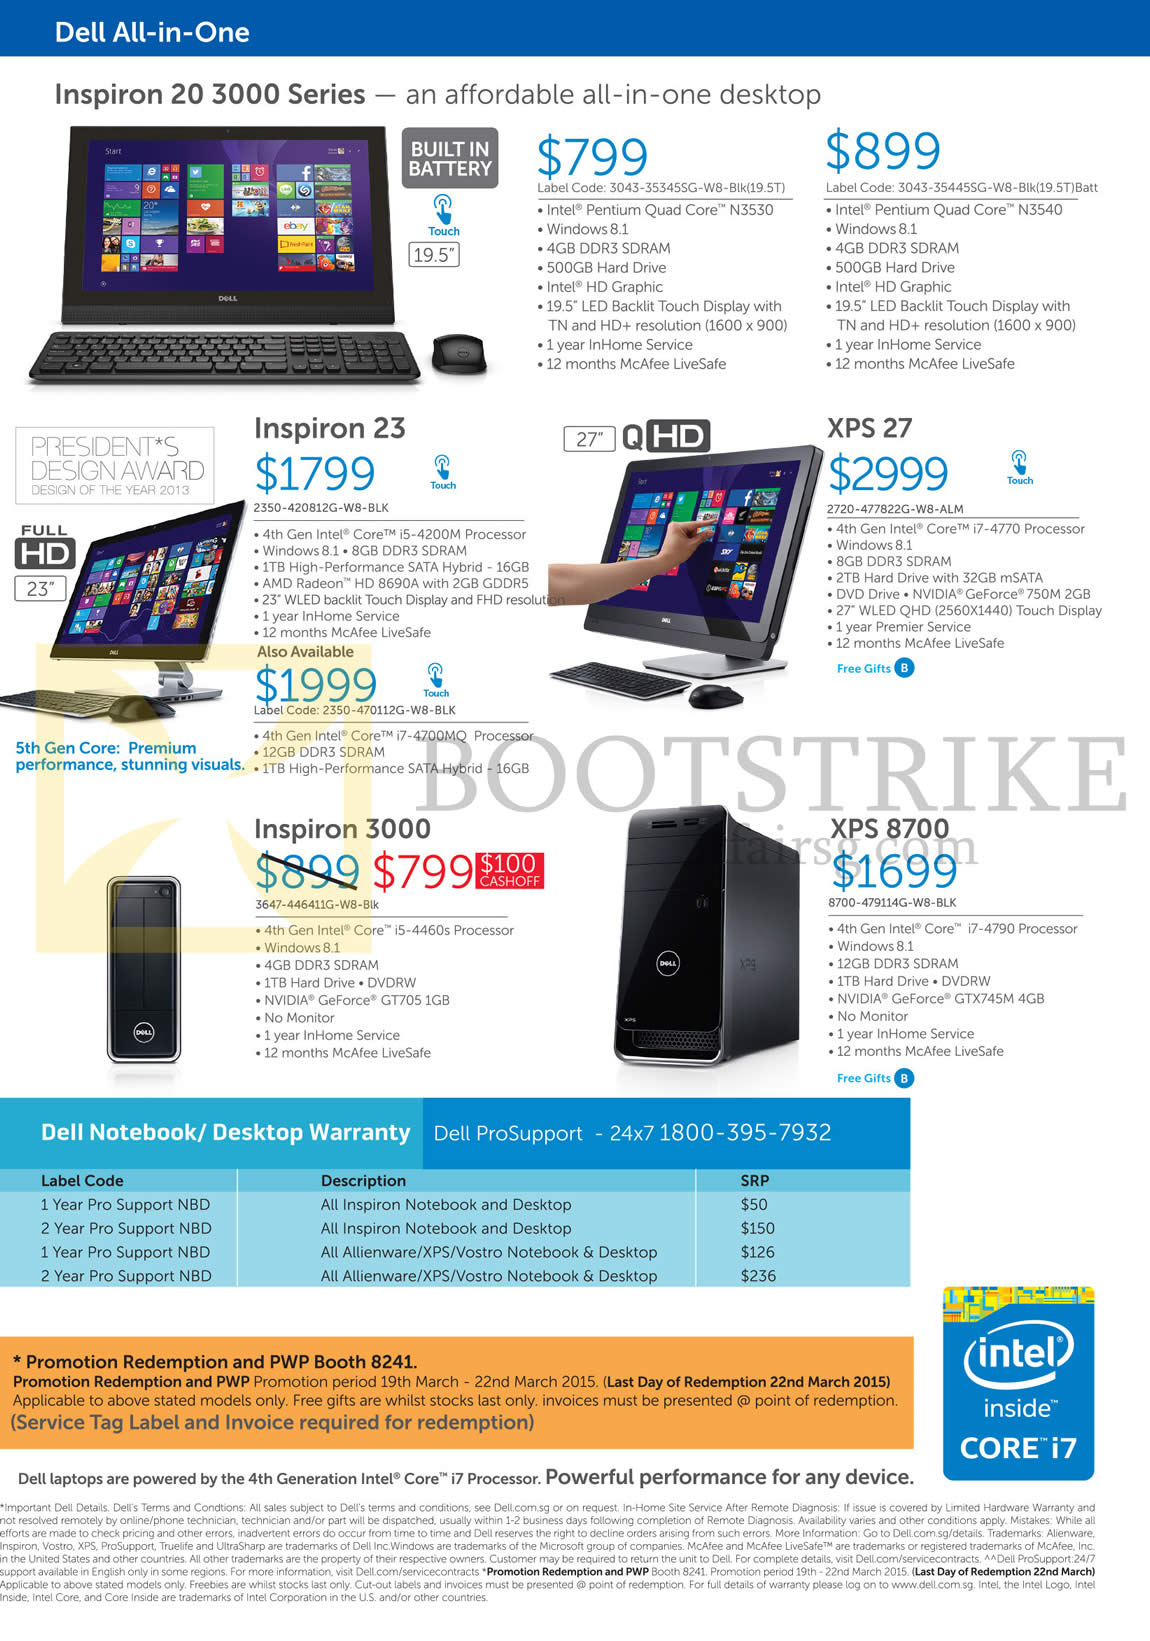 IT SHOW 2015 price list image brochure of Dell Desktop PCs, AIO Desktop PCs, Inspiron 20 3000 Series, 23, 3000, XPS 27, 8700, Warranty